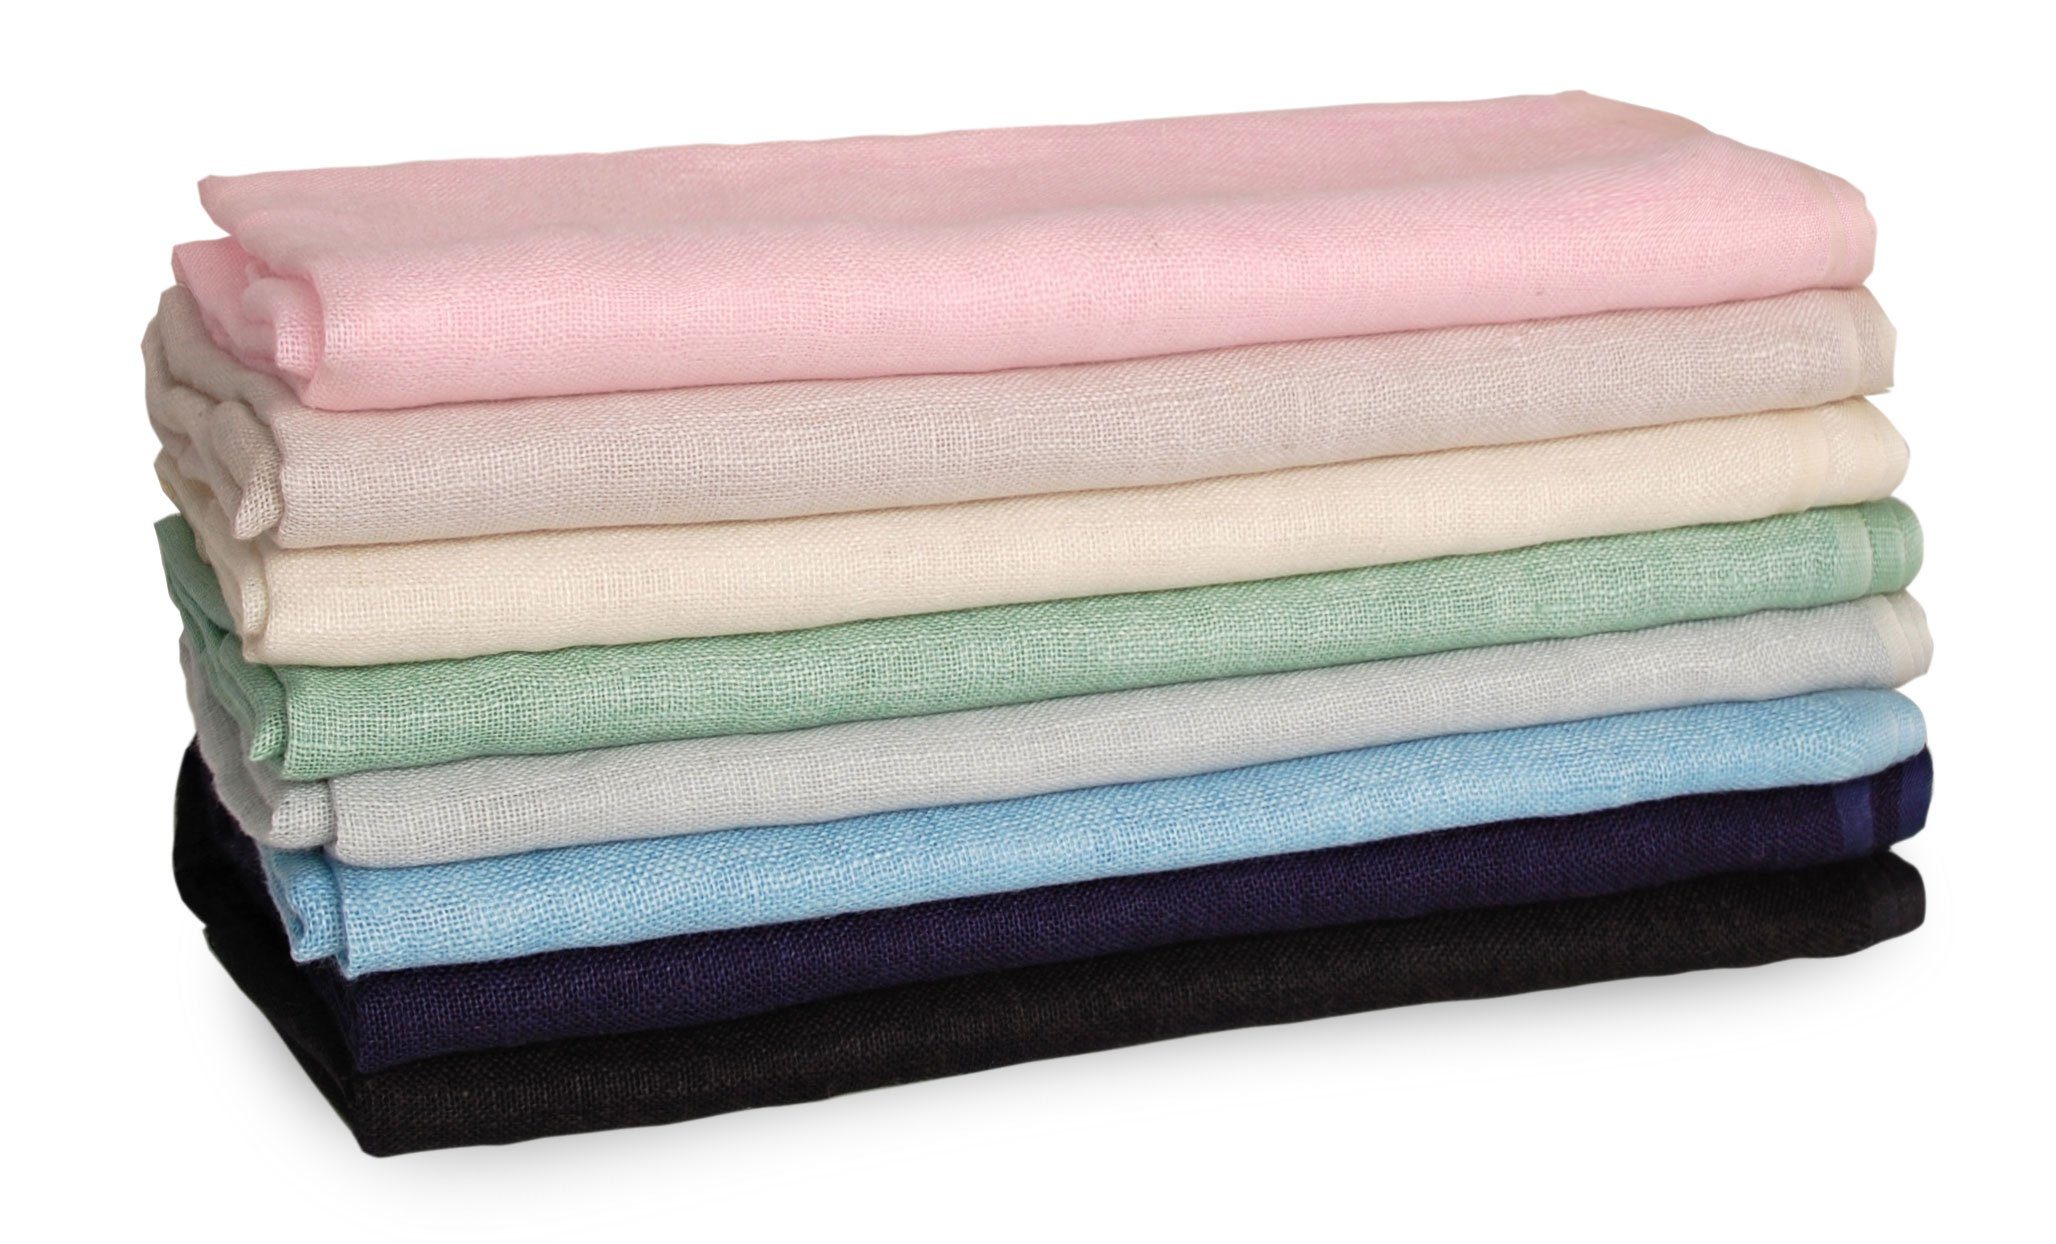 Schal Damen leicht für Ganzjahres-Schal - und und Bovari aus Schal – – Fransen-Schal atmungsaktiv 100% Leinen rosa Leinen, Herren